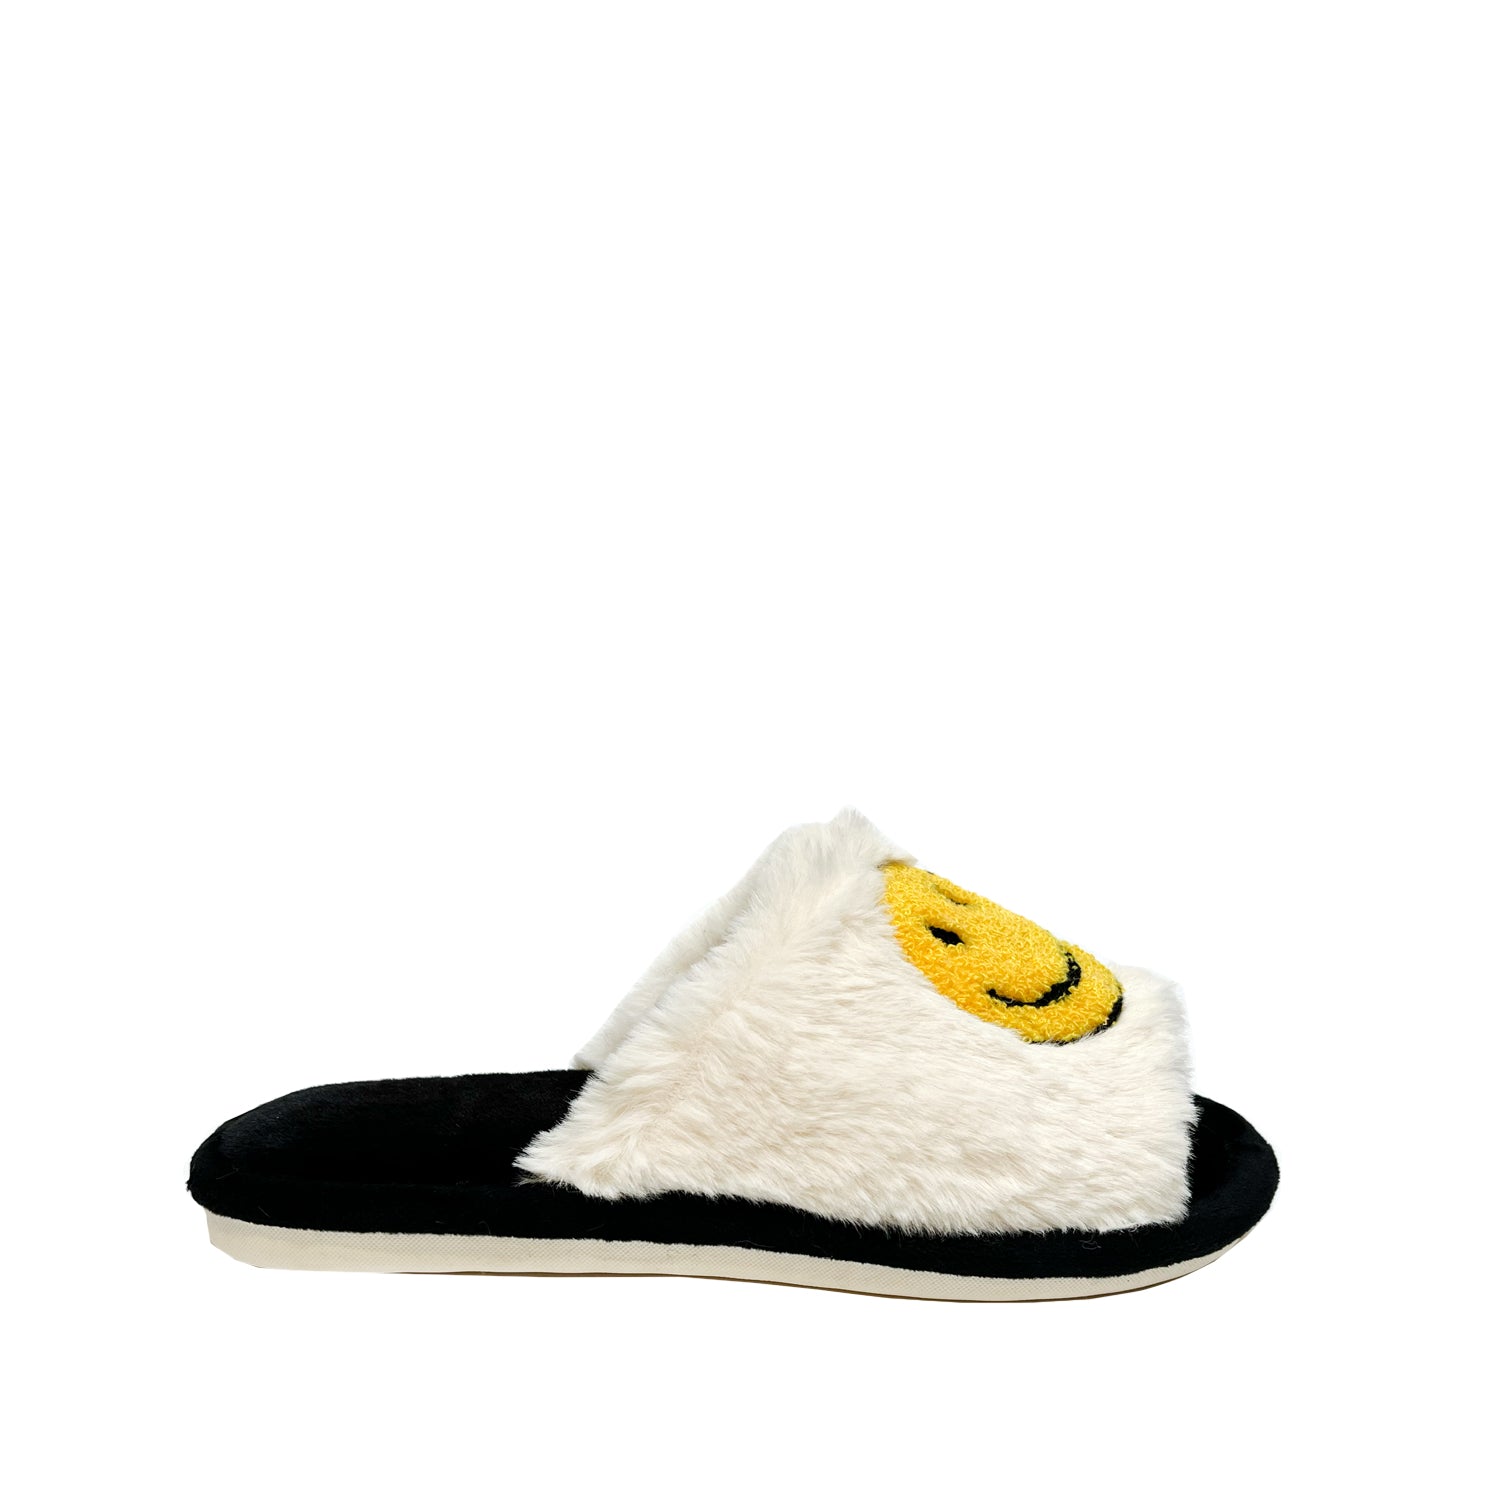 FLOOF Open Toe Fluffy Smile Slippers in Black & White